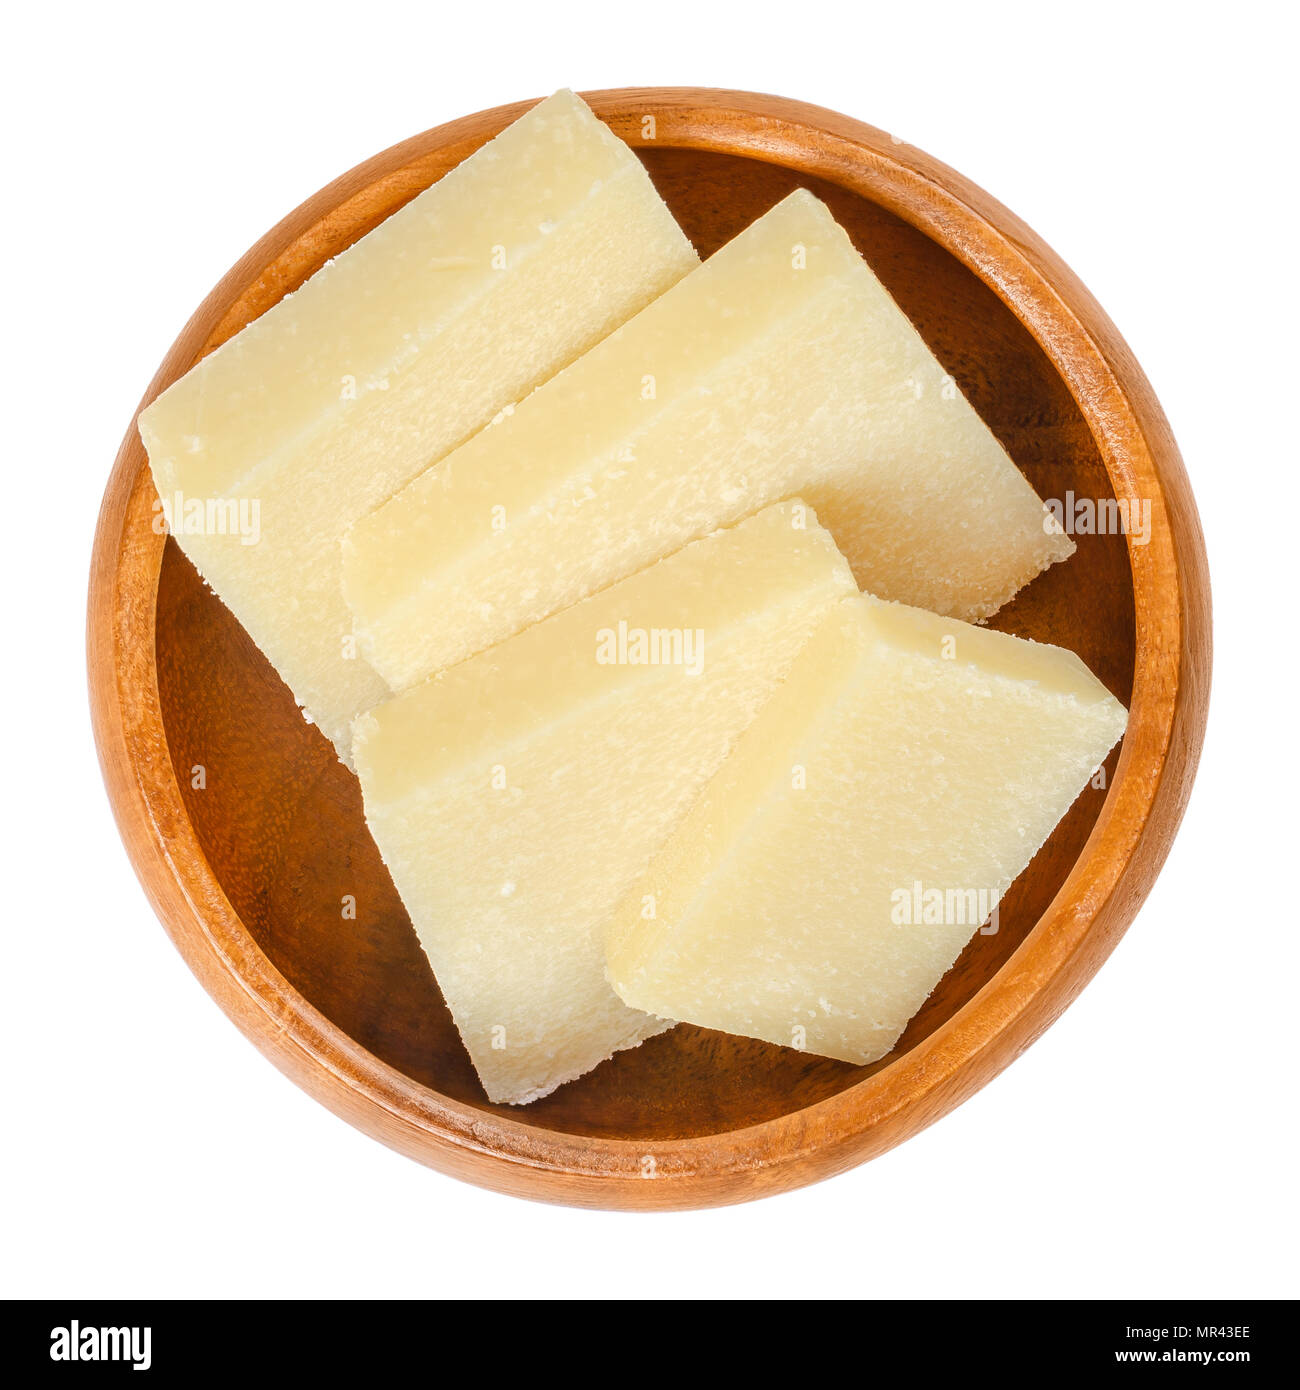 Parmesan Schichten in Houten. Parmigiano-Reggiano. Italienische Harte, körnige Käse, der leicht gelbliche Farbe, aus nicht pasteurisierter Kuhmilch. Stockfoto